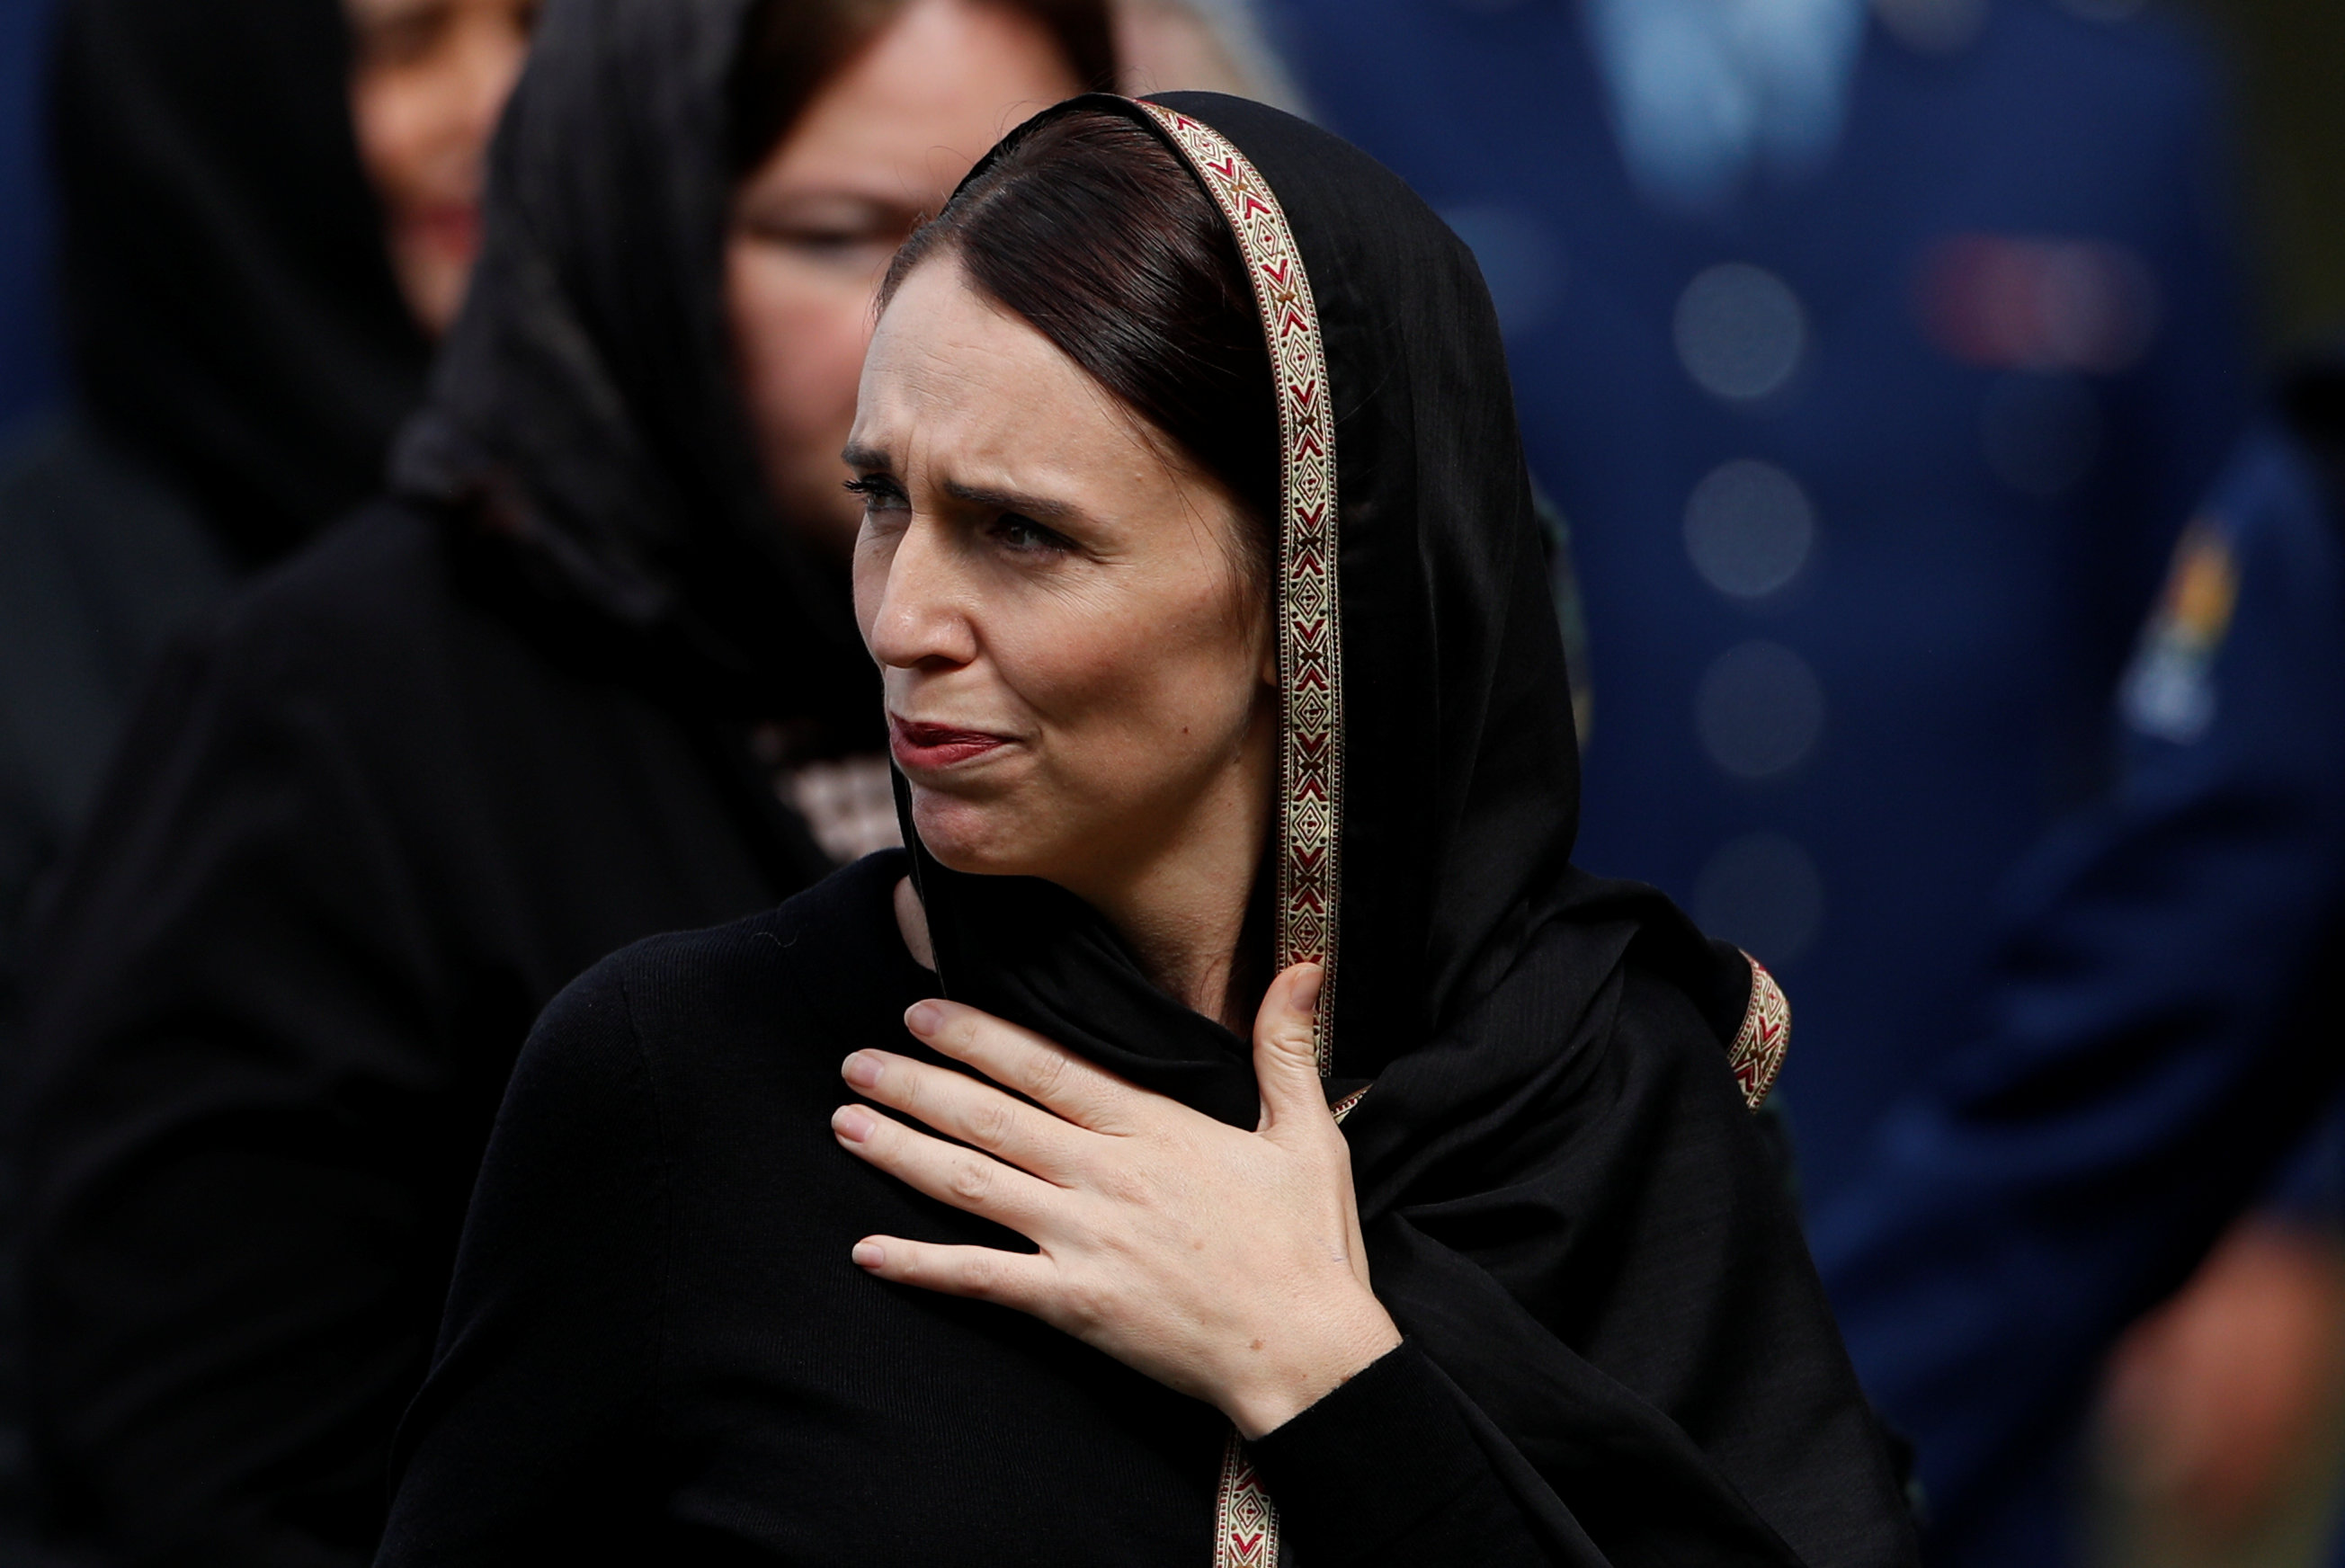 Primera Ministra de Nueva Zelanda recibe amenaza de muerte tras ataque terrorista